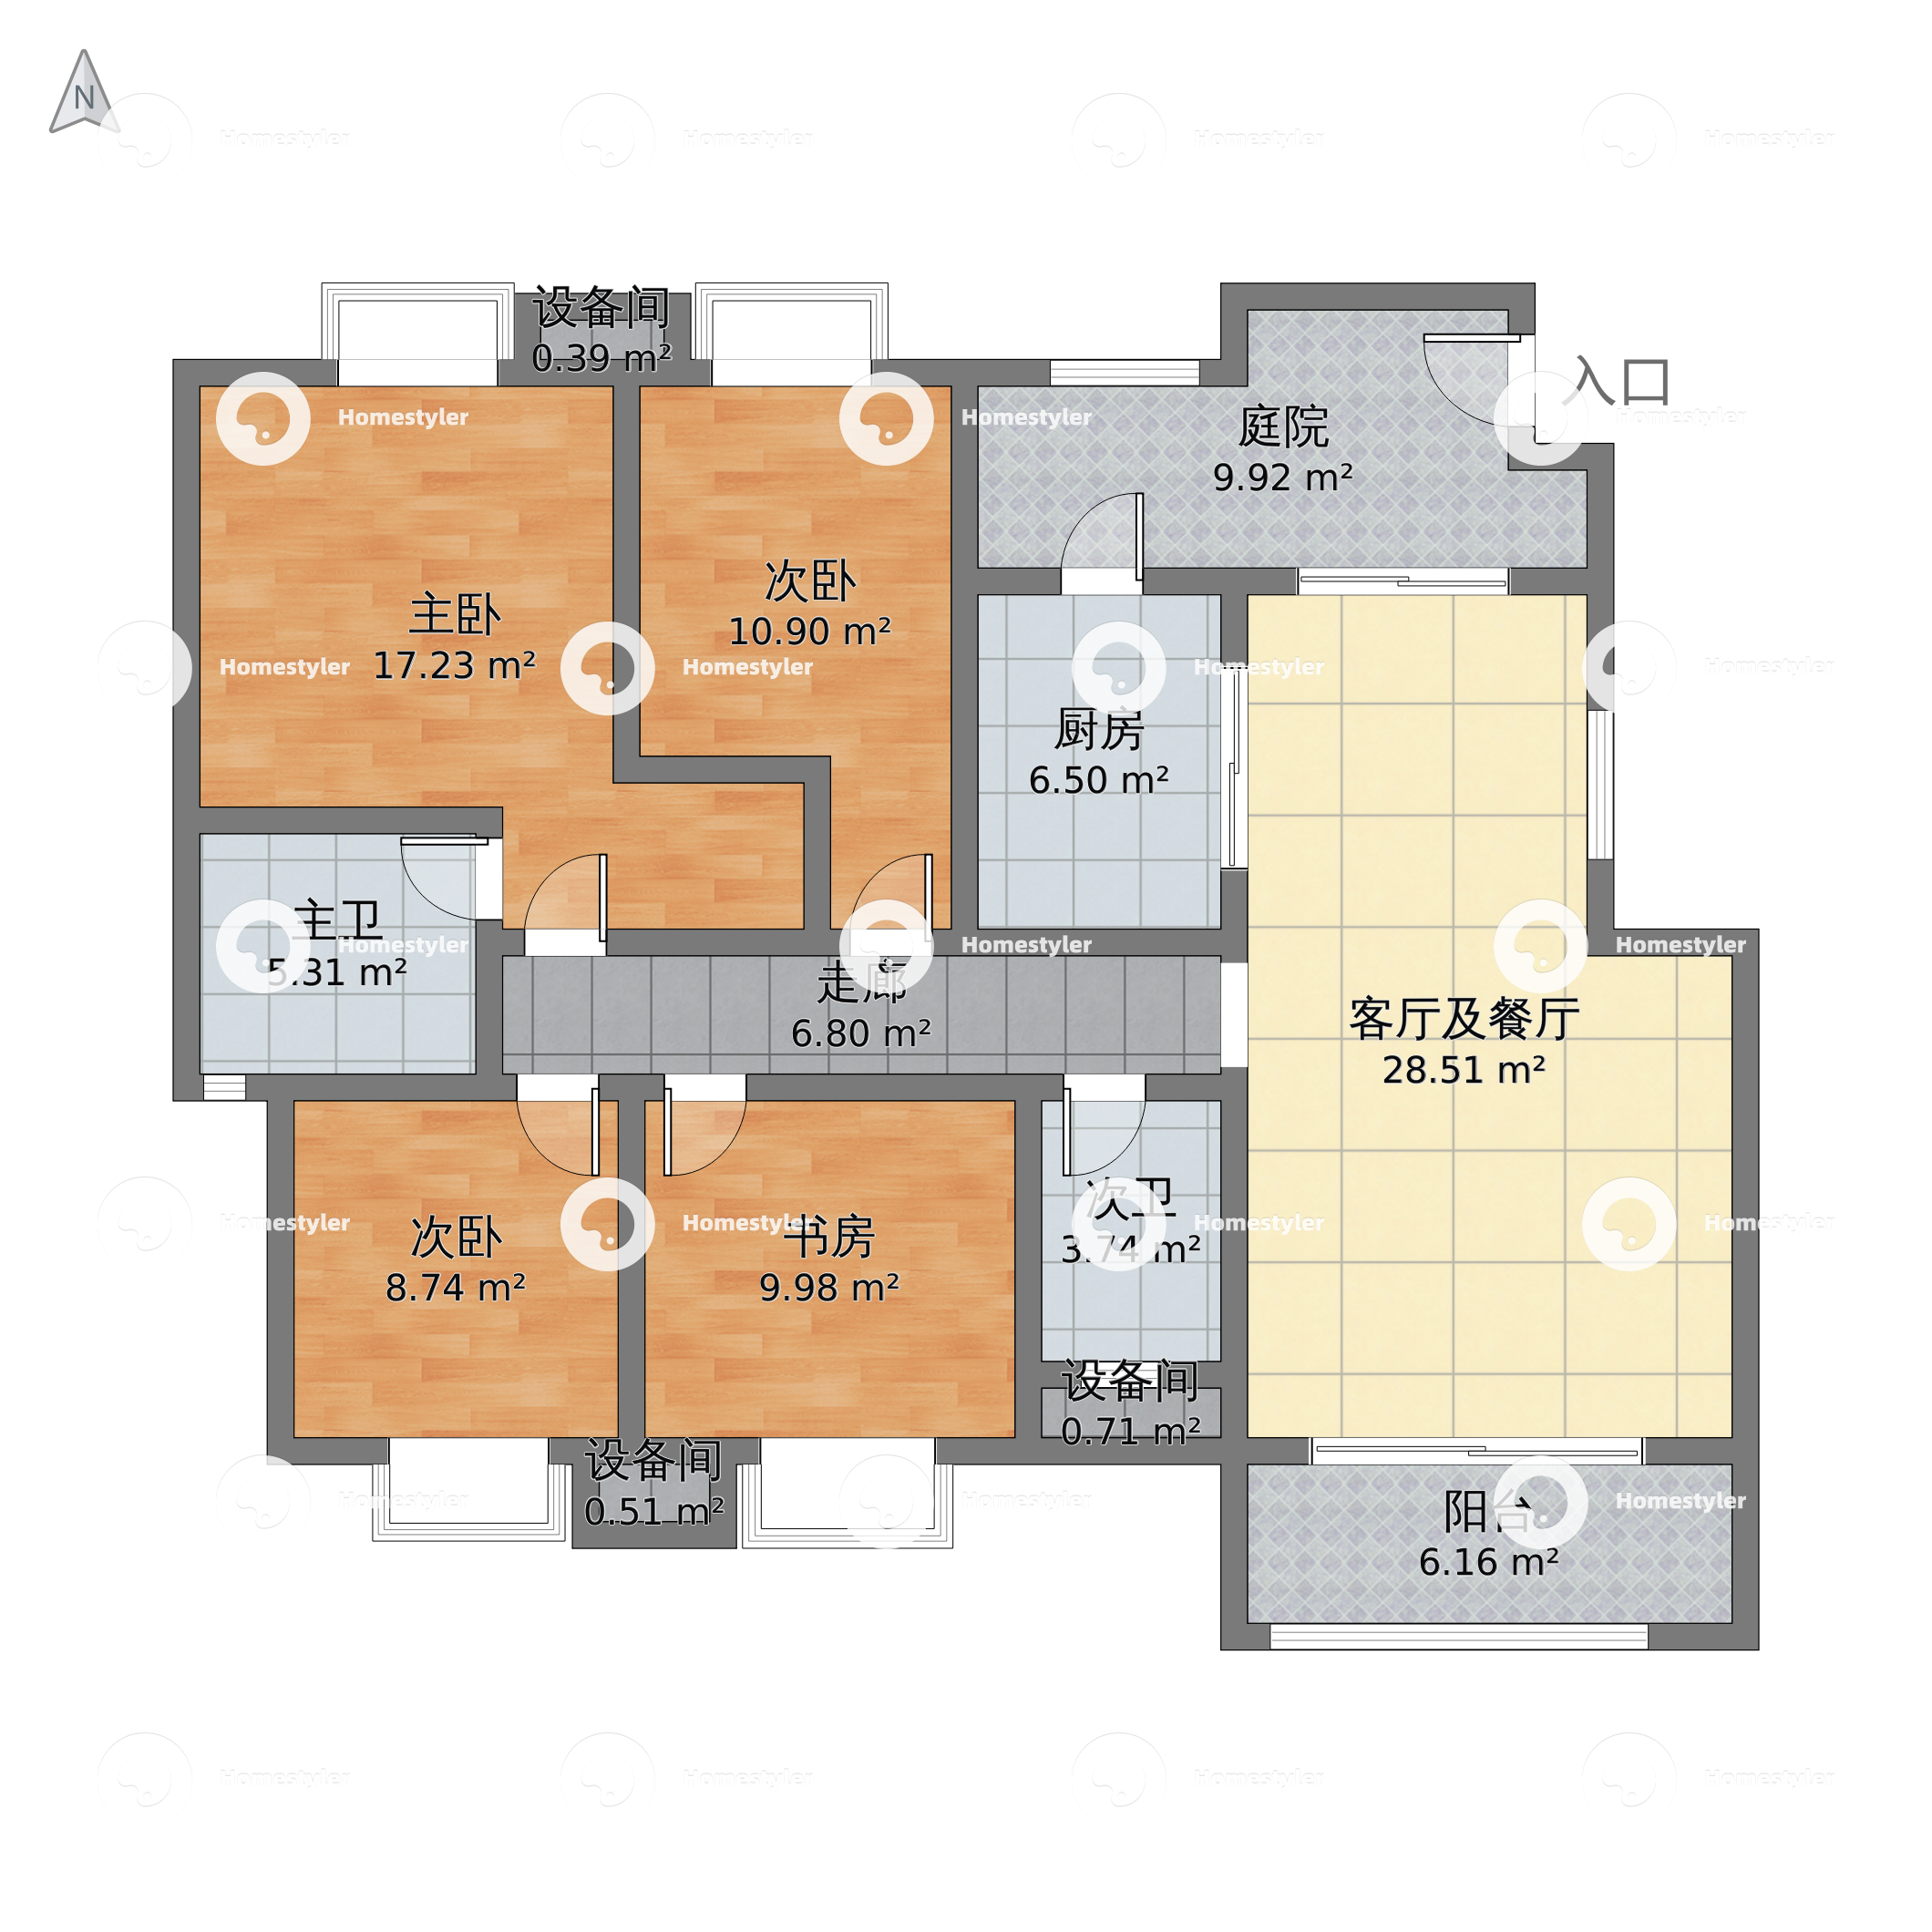 北京市丰台区 世华水岸5室2厅3卫 167m²-v2户型图 - 小区户型图 -躺平设计家